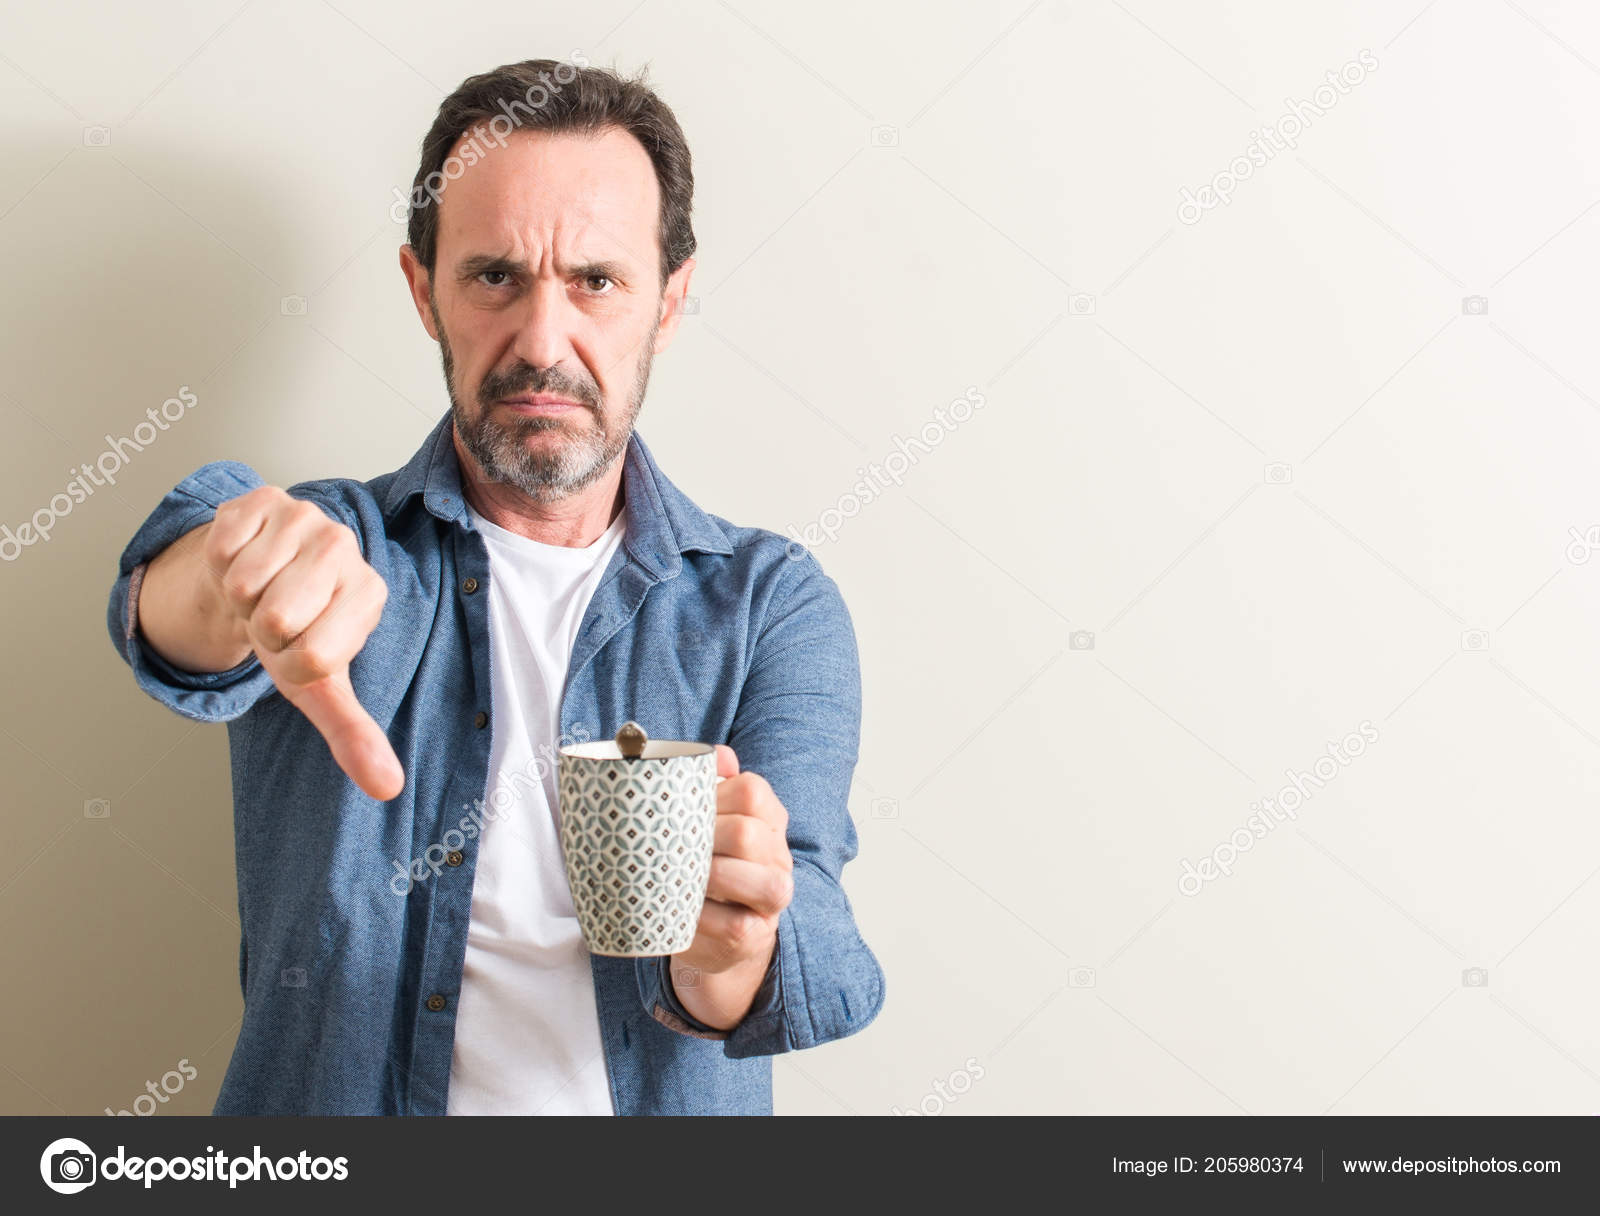 ALL HEADS DOWN TO THE BEARD MAN, Coffee Mug